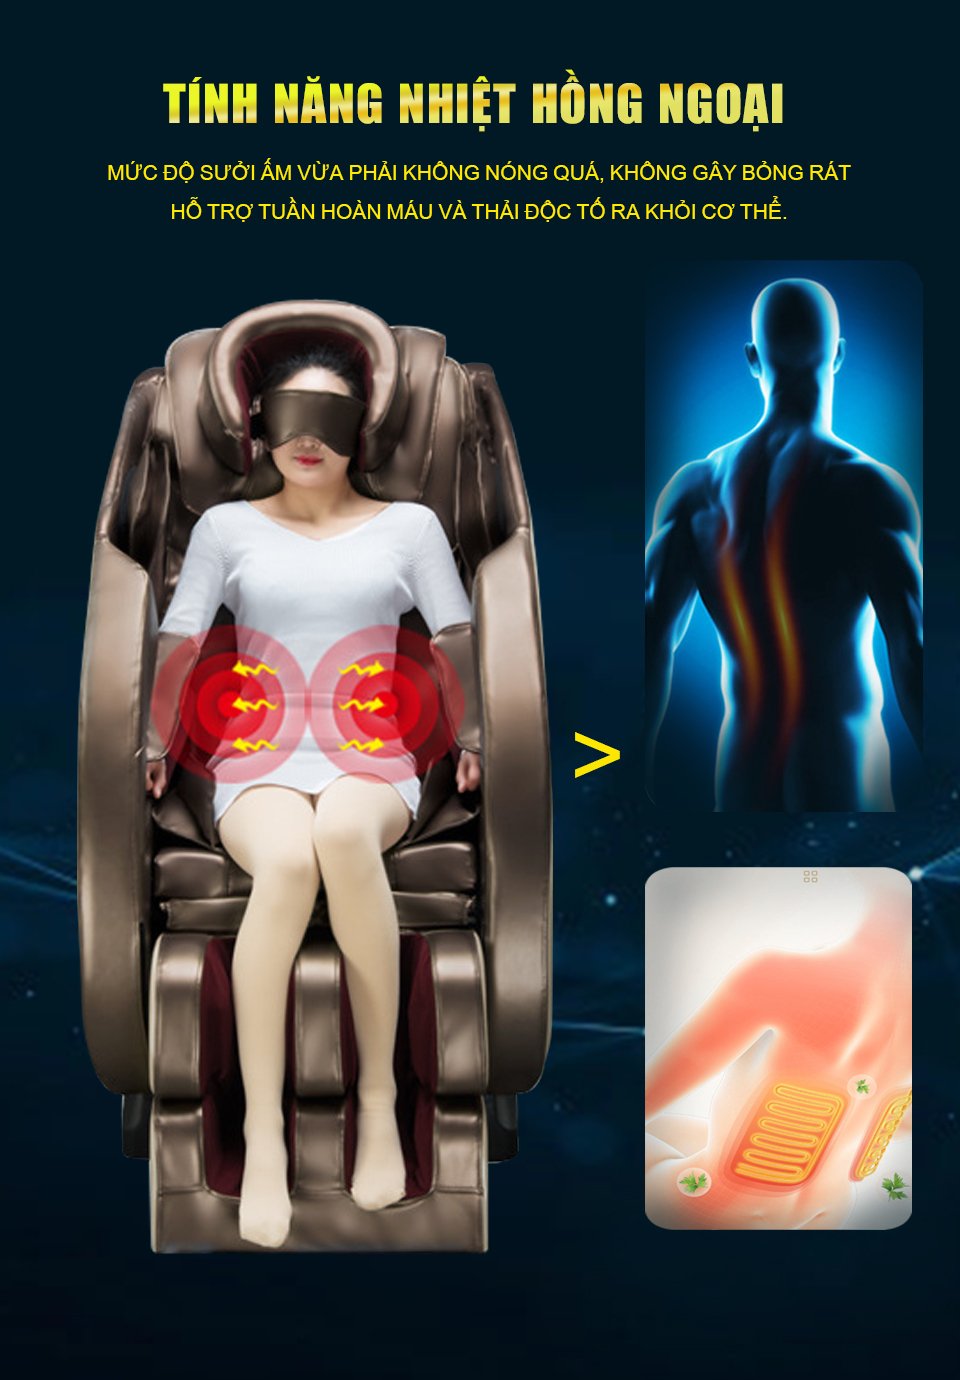 Công nghệ nhiệt hồng ngoại hỗ trợ tuần hoàn máu của ghế massage Haruko H7